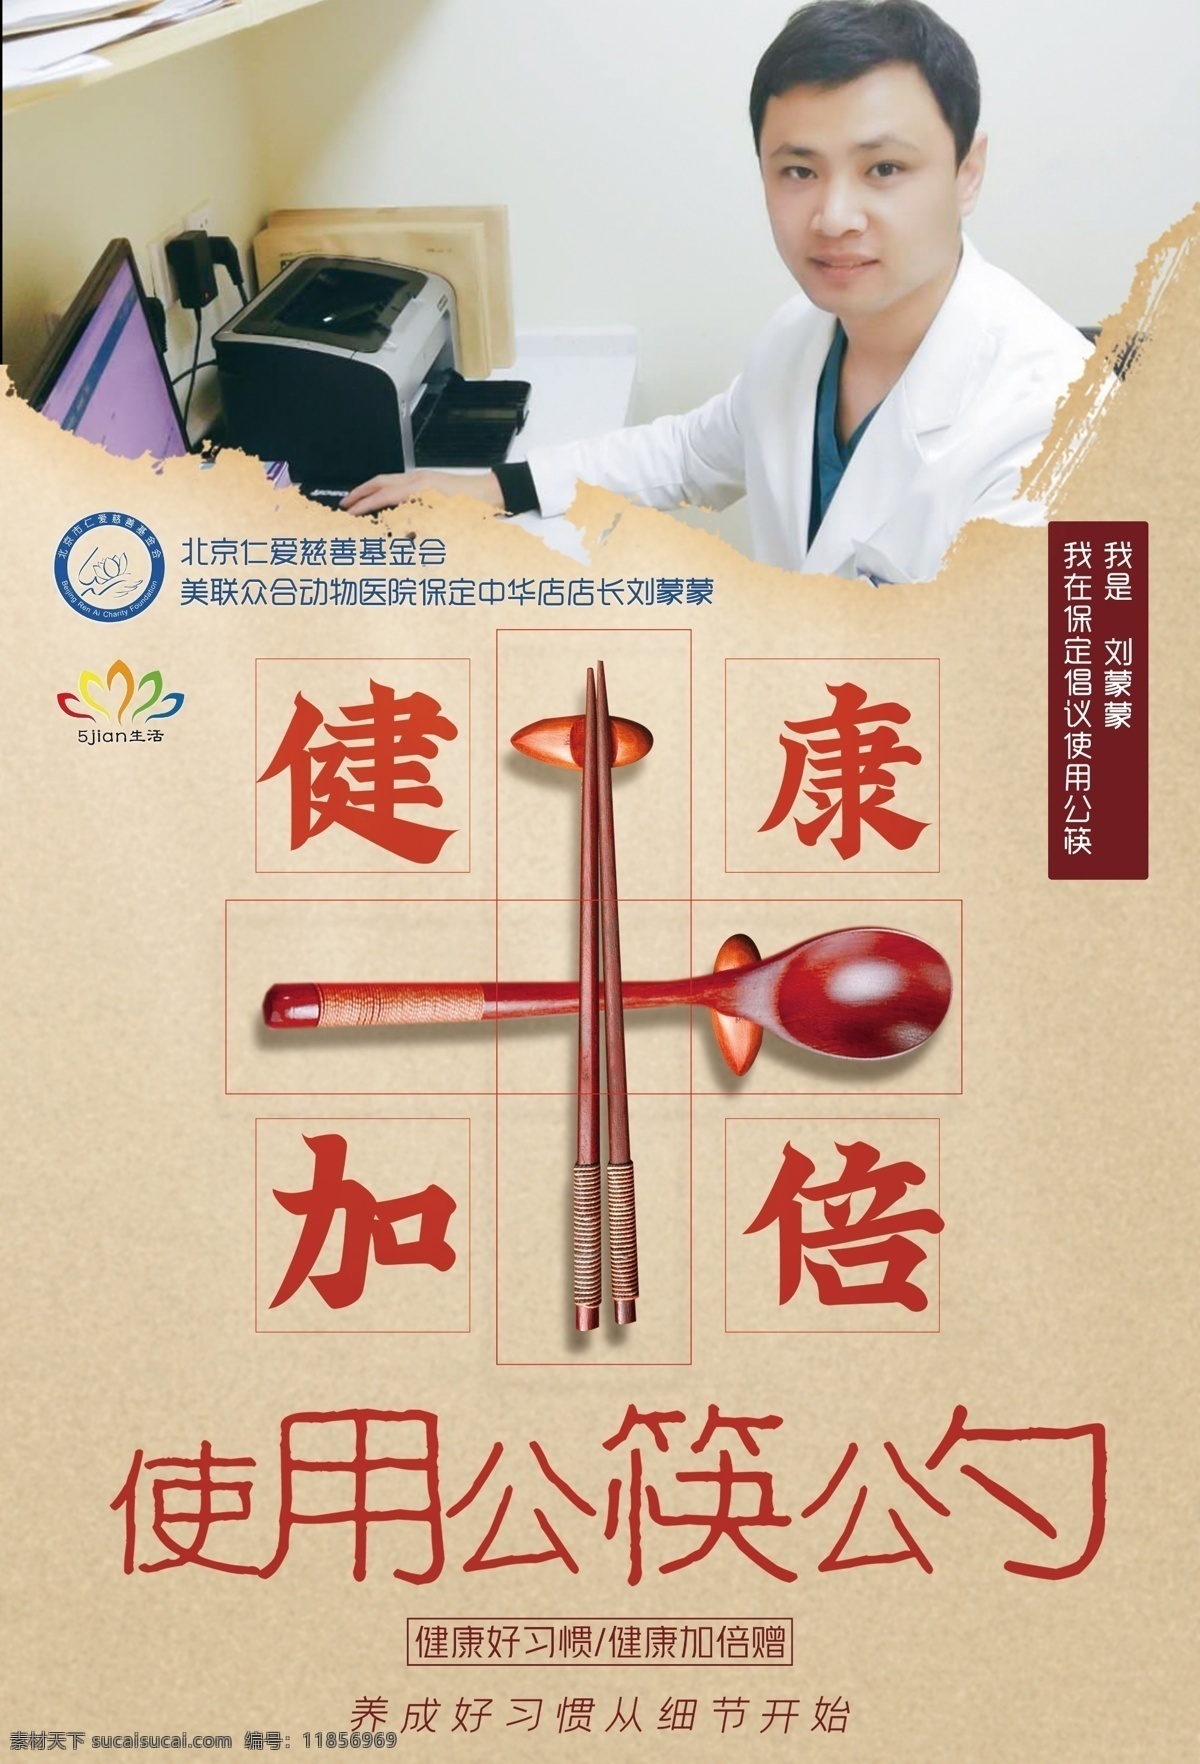 提倡 使用 公 勺 筷 公勺公筷 健康加倍 名人提倡 人物边框 预防传染病